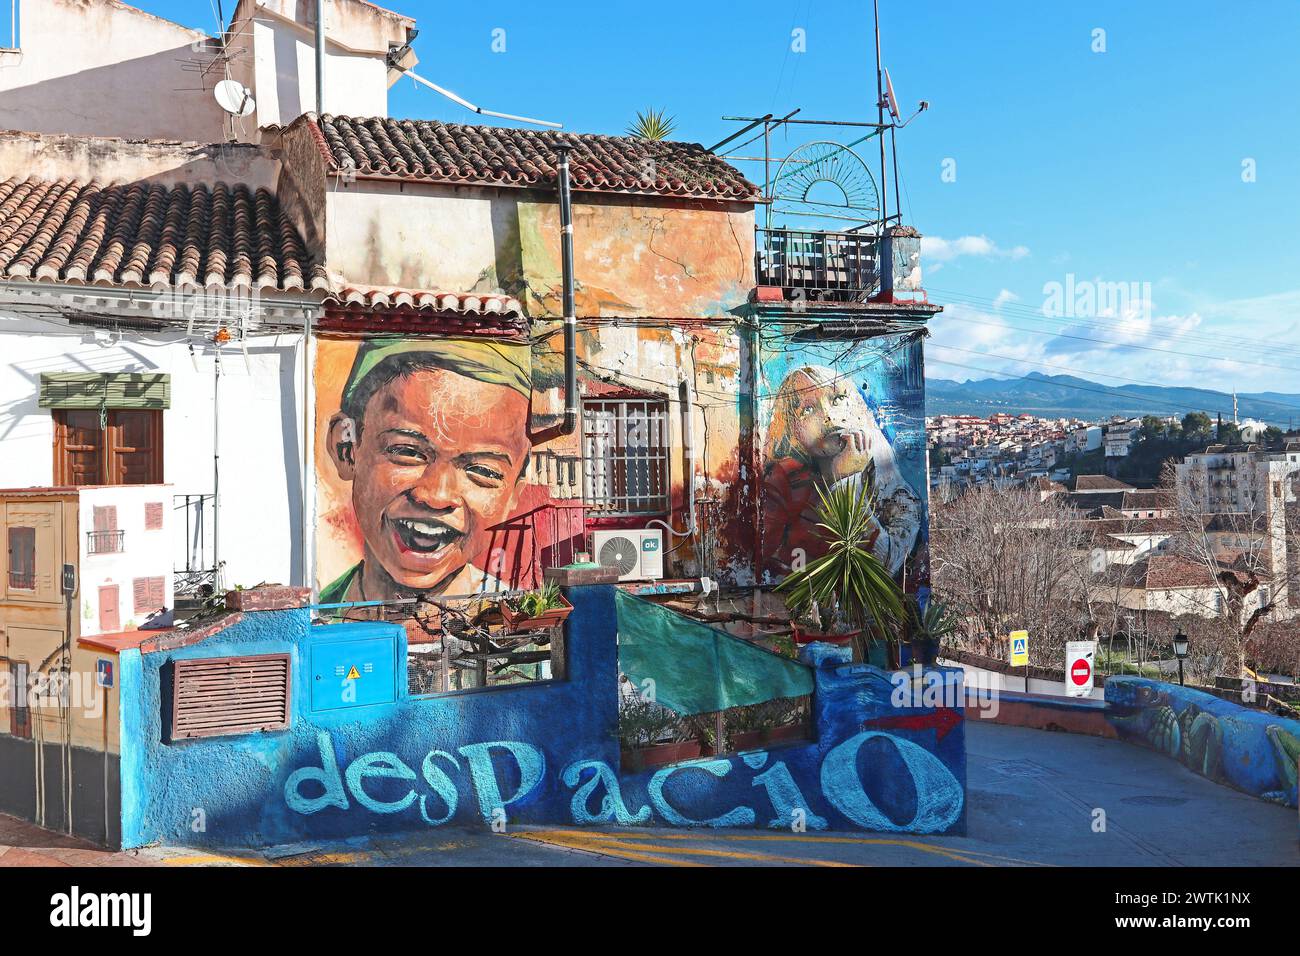 Grandi e vivaci murales decorano case e pareti nel quartiere Realejo-San Matias, rivelando un lato contemporaneo di Granada, Spagna Foto Stock